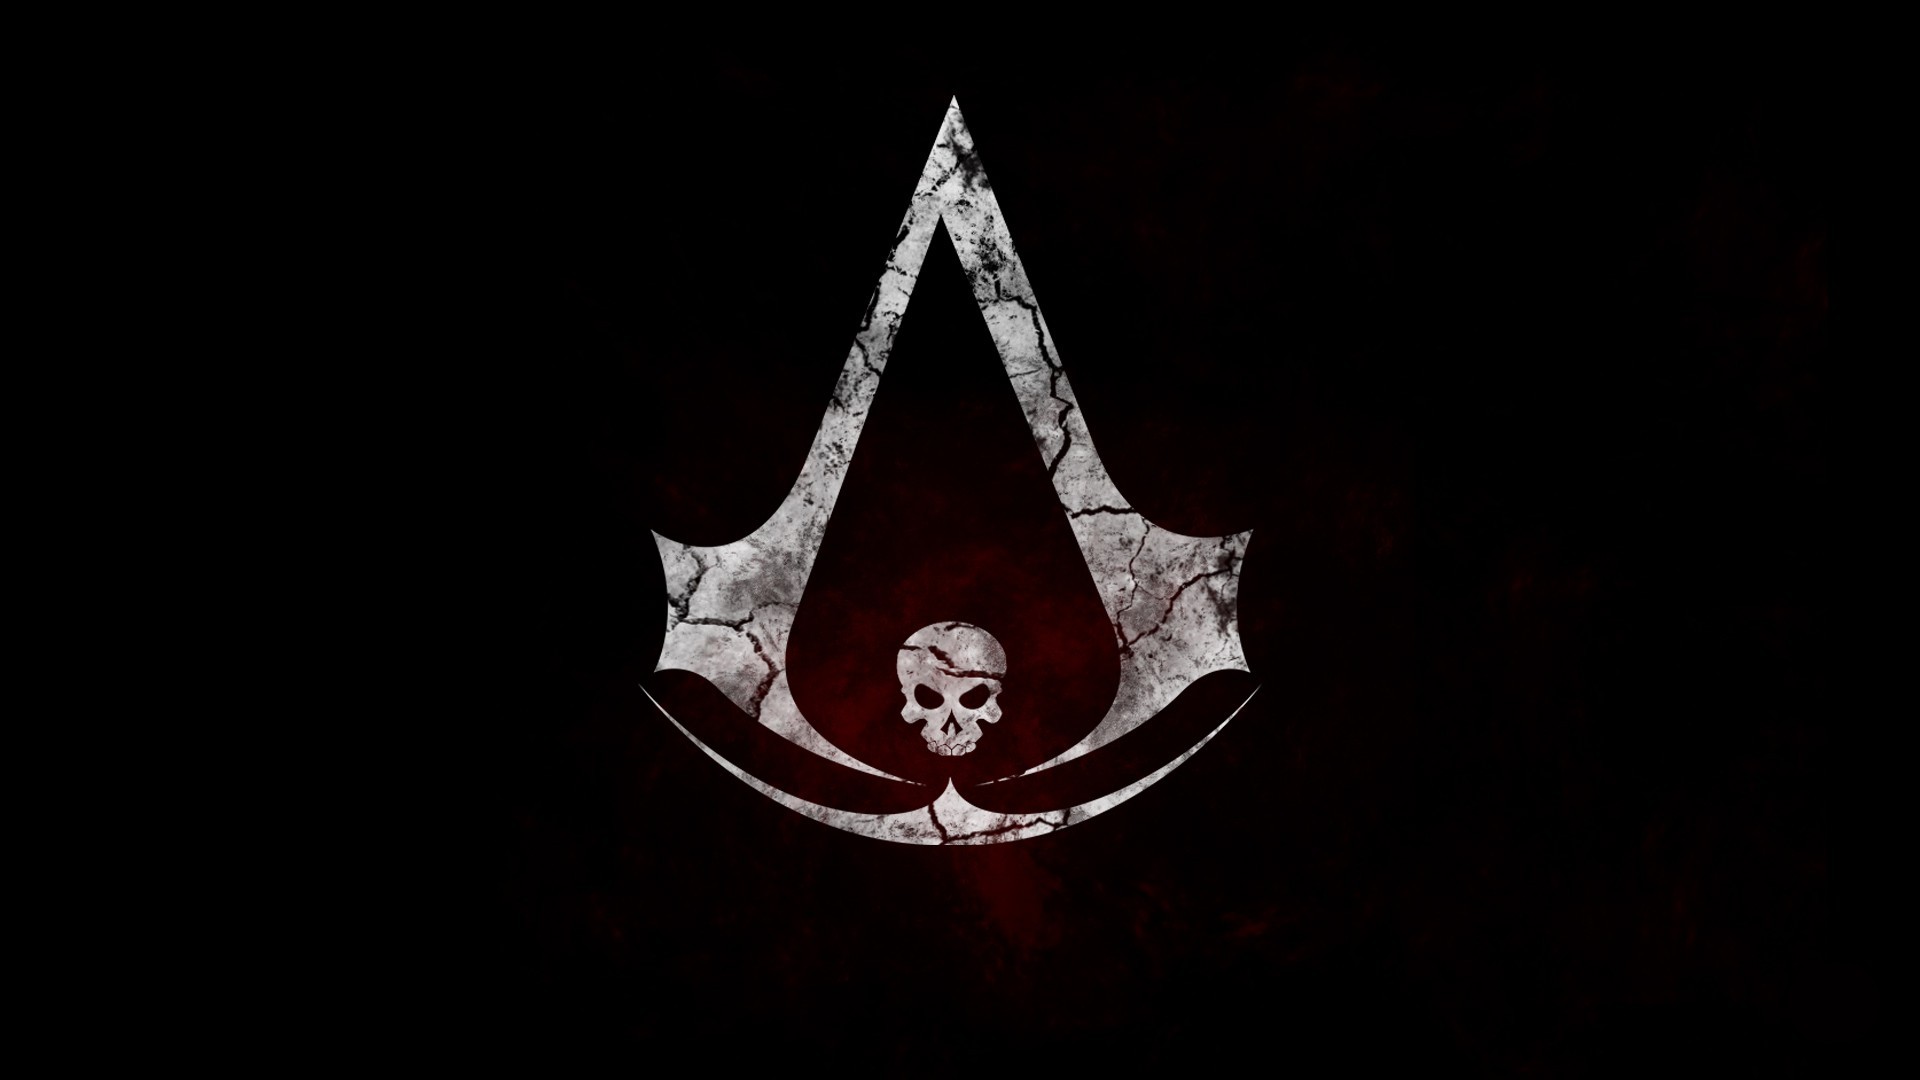 1920x1080 Assassin's Creed Black Flag Logo Skull wallpaper |  | 118636  | WallpaperUP